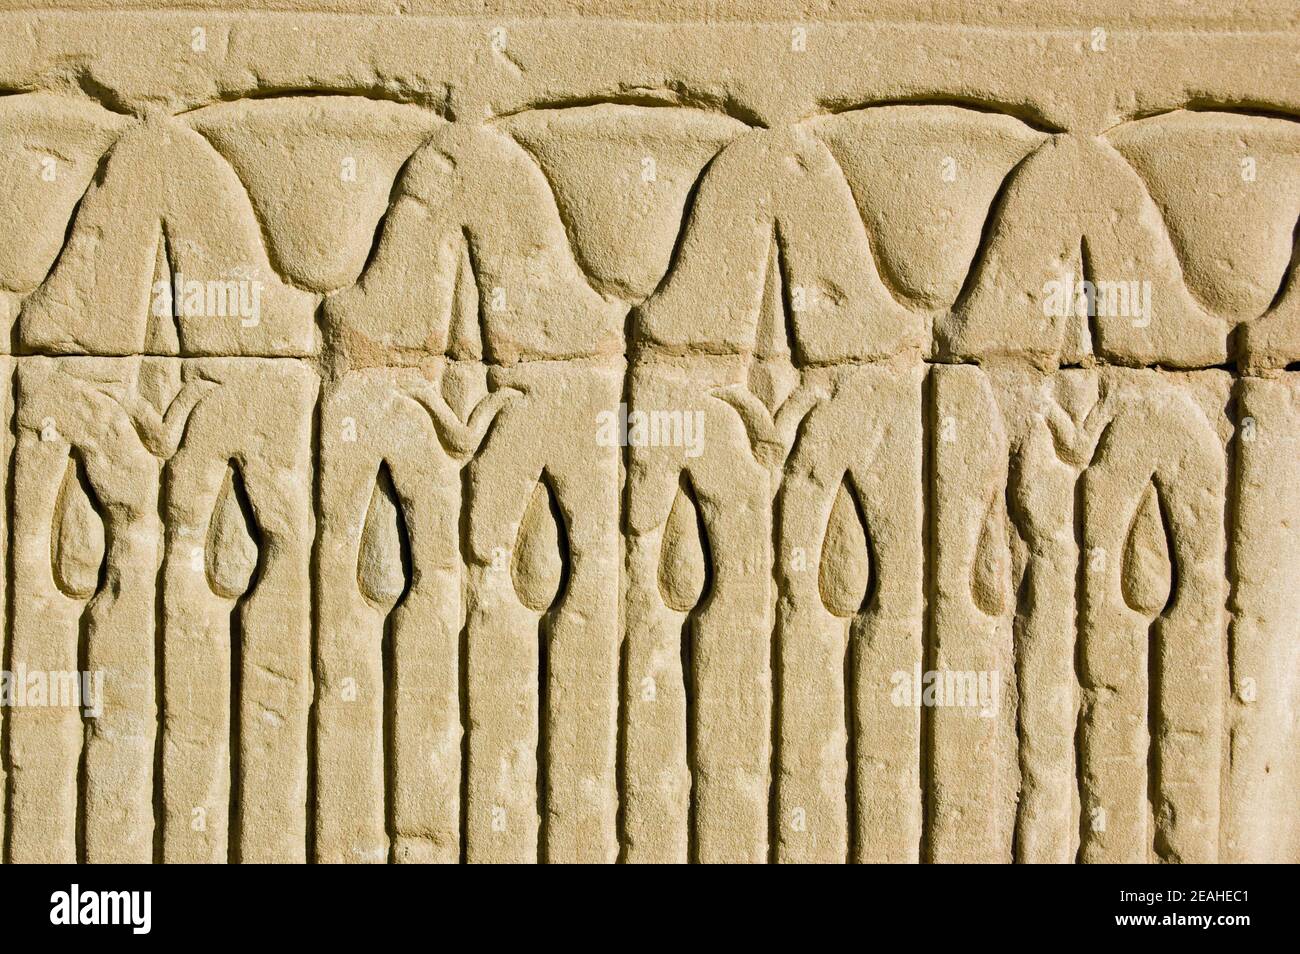 Gros plan d'une ancienne pierre égyptienne, frise sculptée de fleurs de lotus dans un lit de roseaux. Mur extérieur du Temple d'Horus, Edfu, Égypte. Banque D'Images